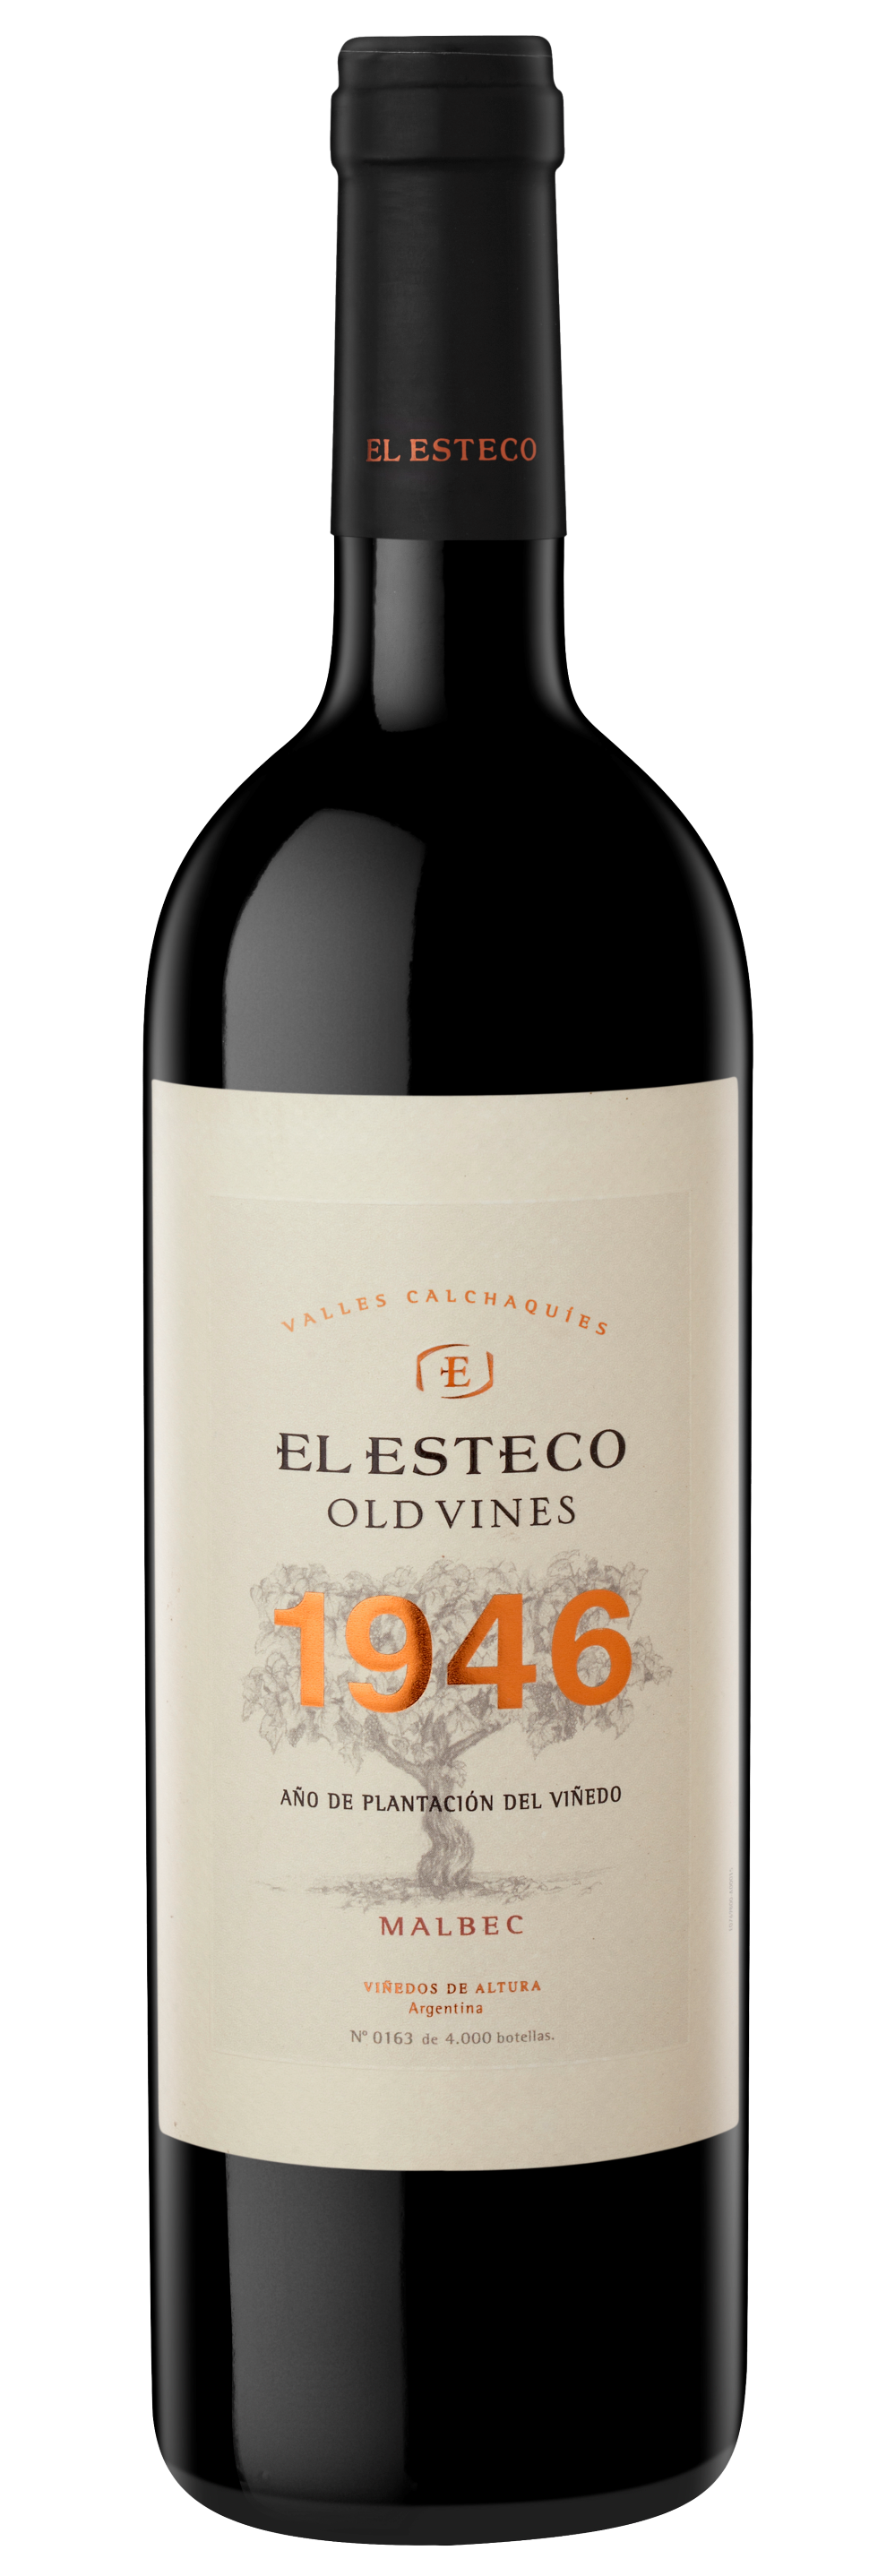 El Esteco Old Vines Malbec